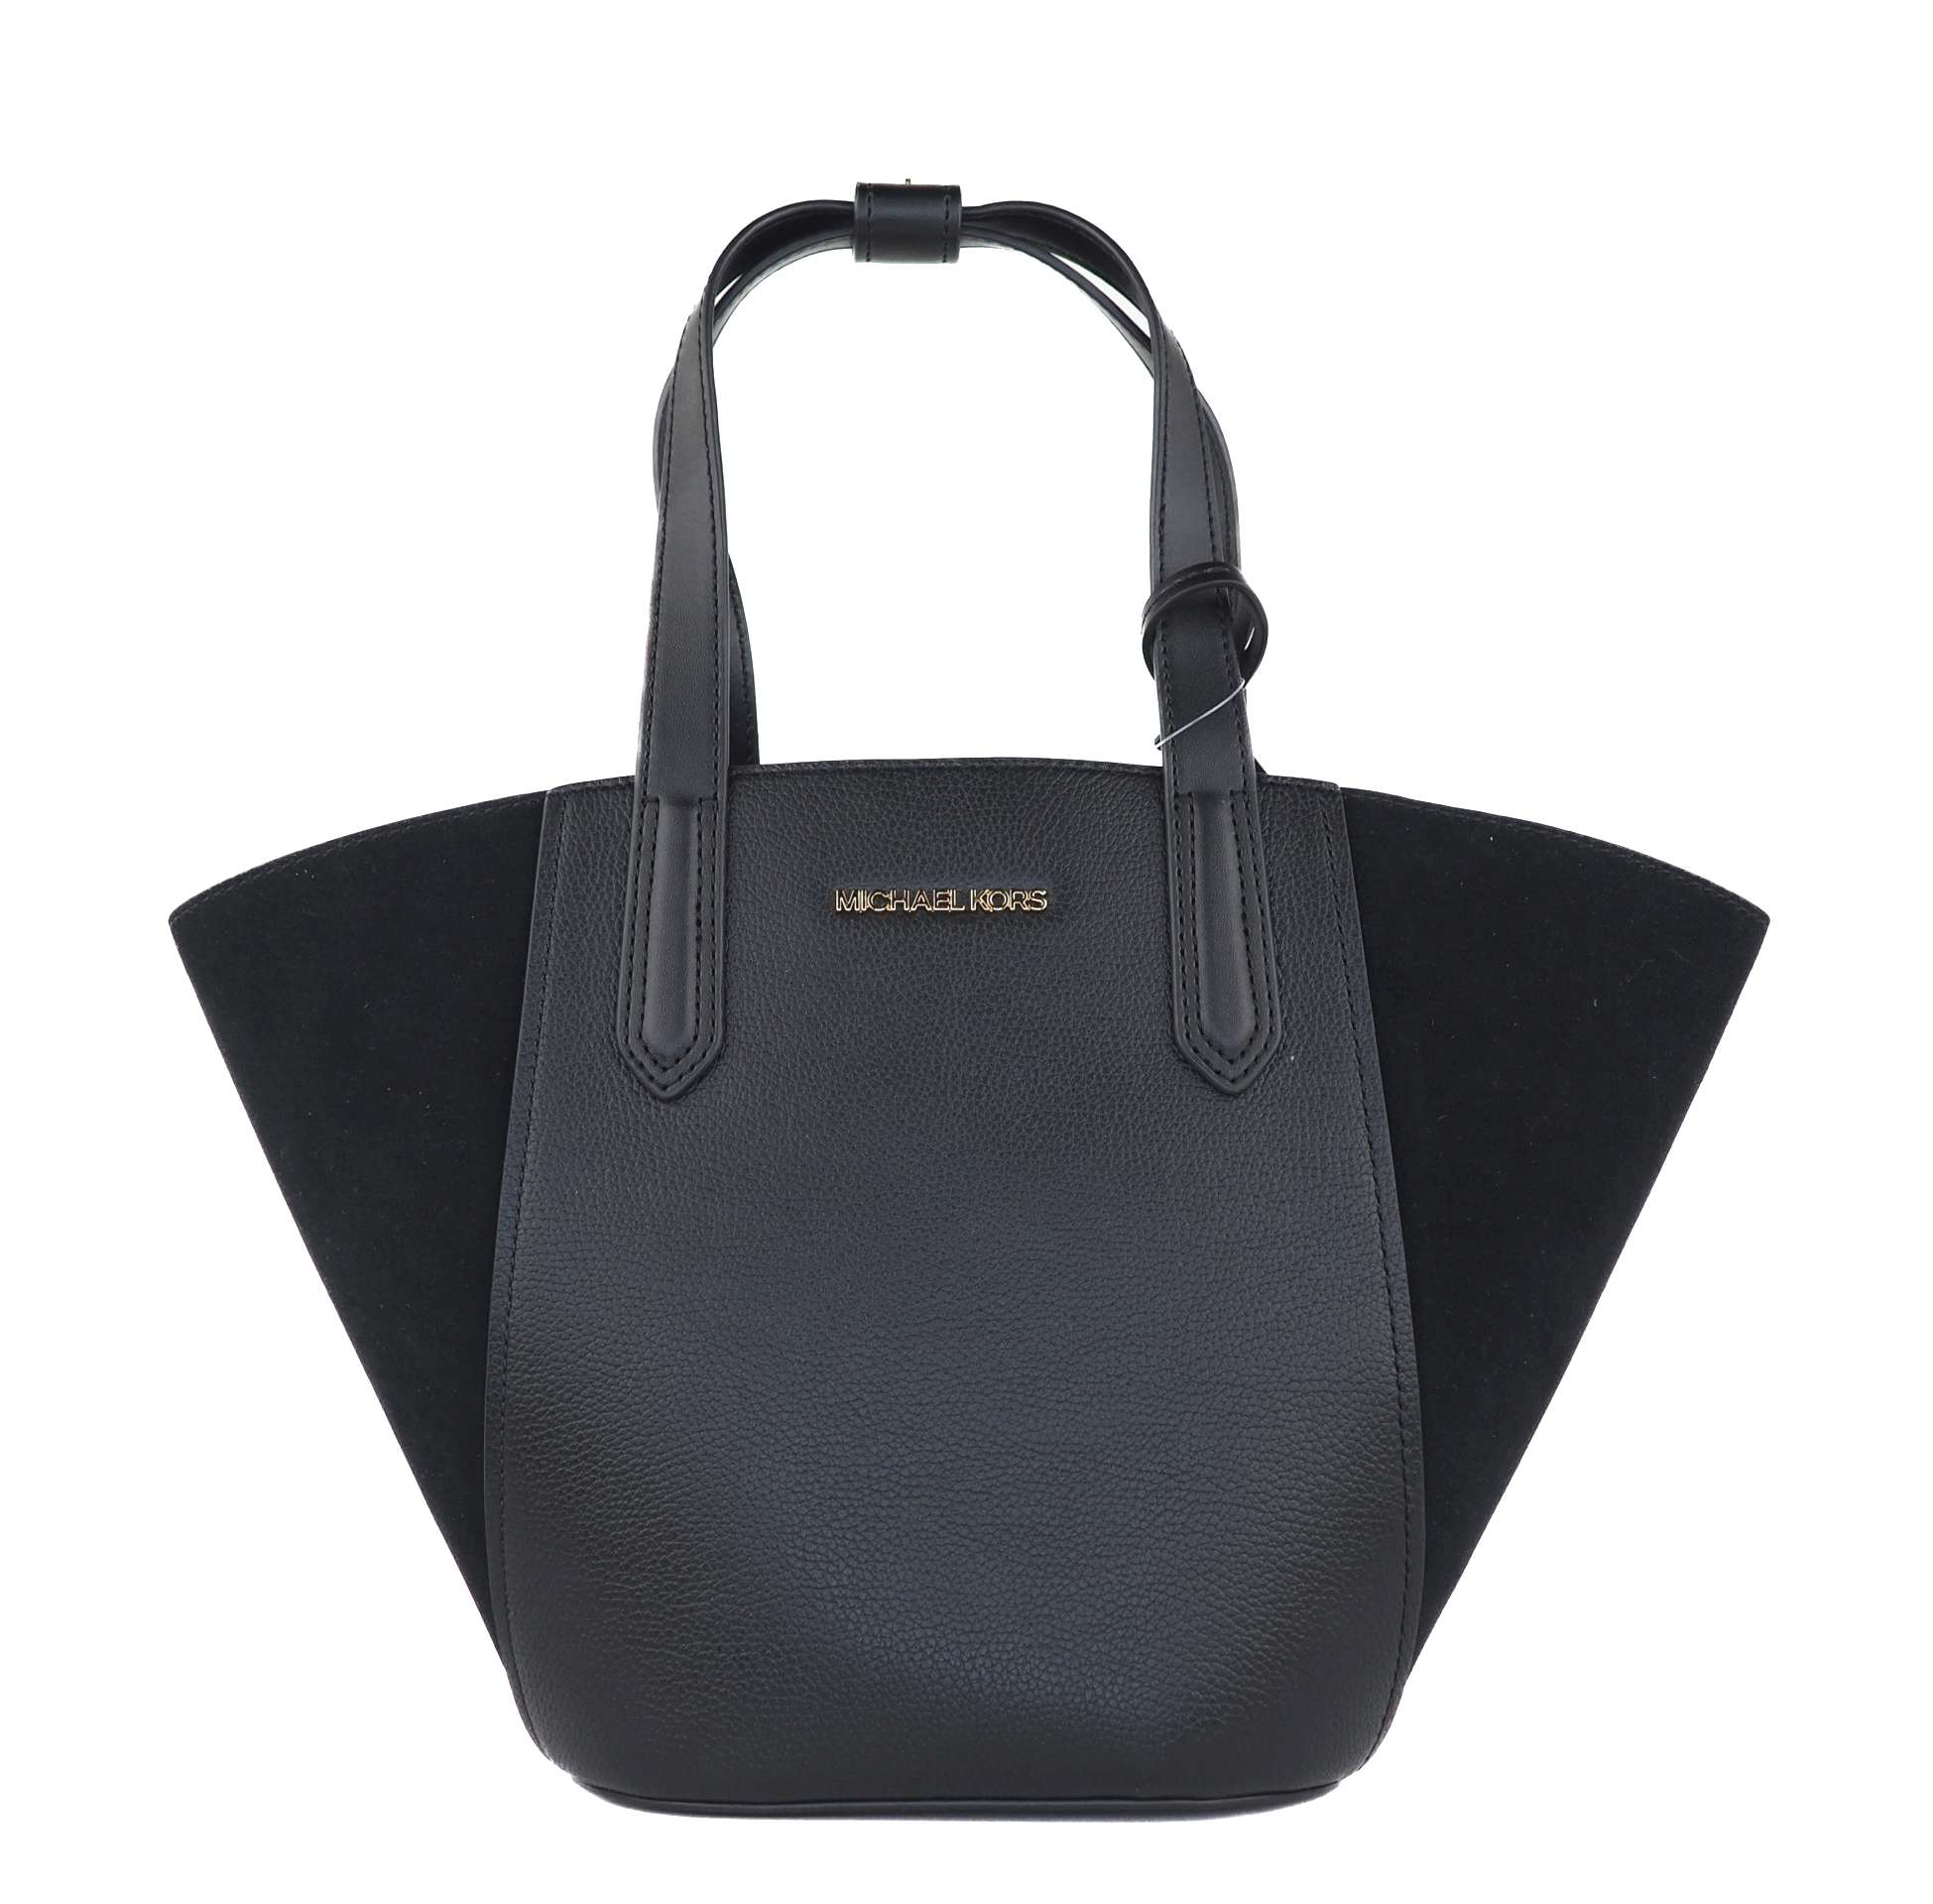 MK Portia Small Leather Suede Tote Handbag kabelka multibella